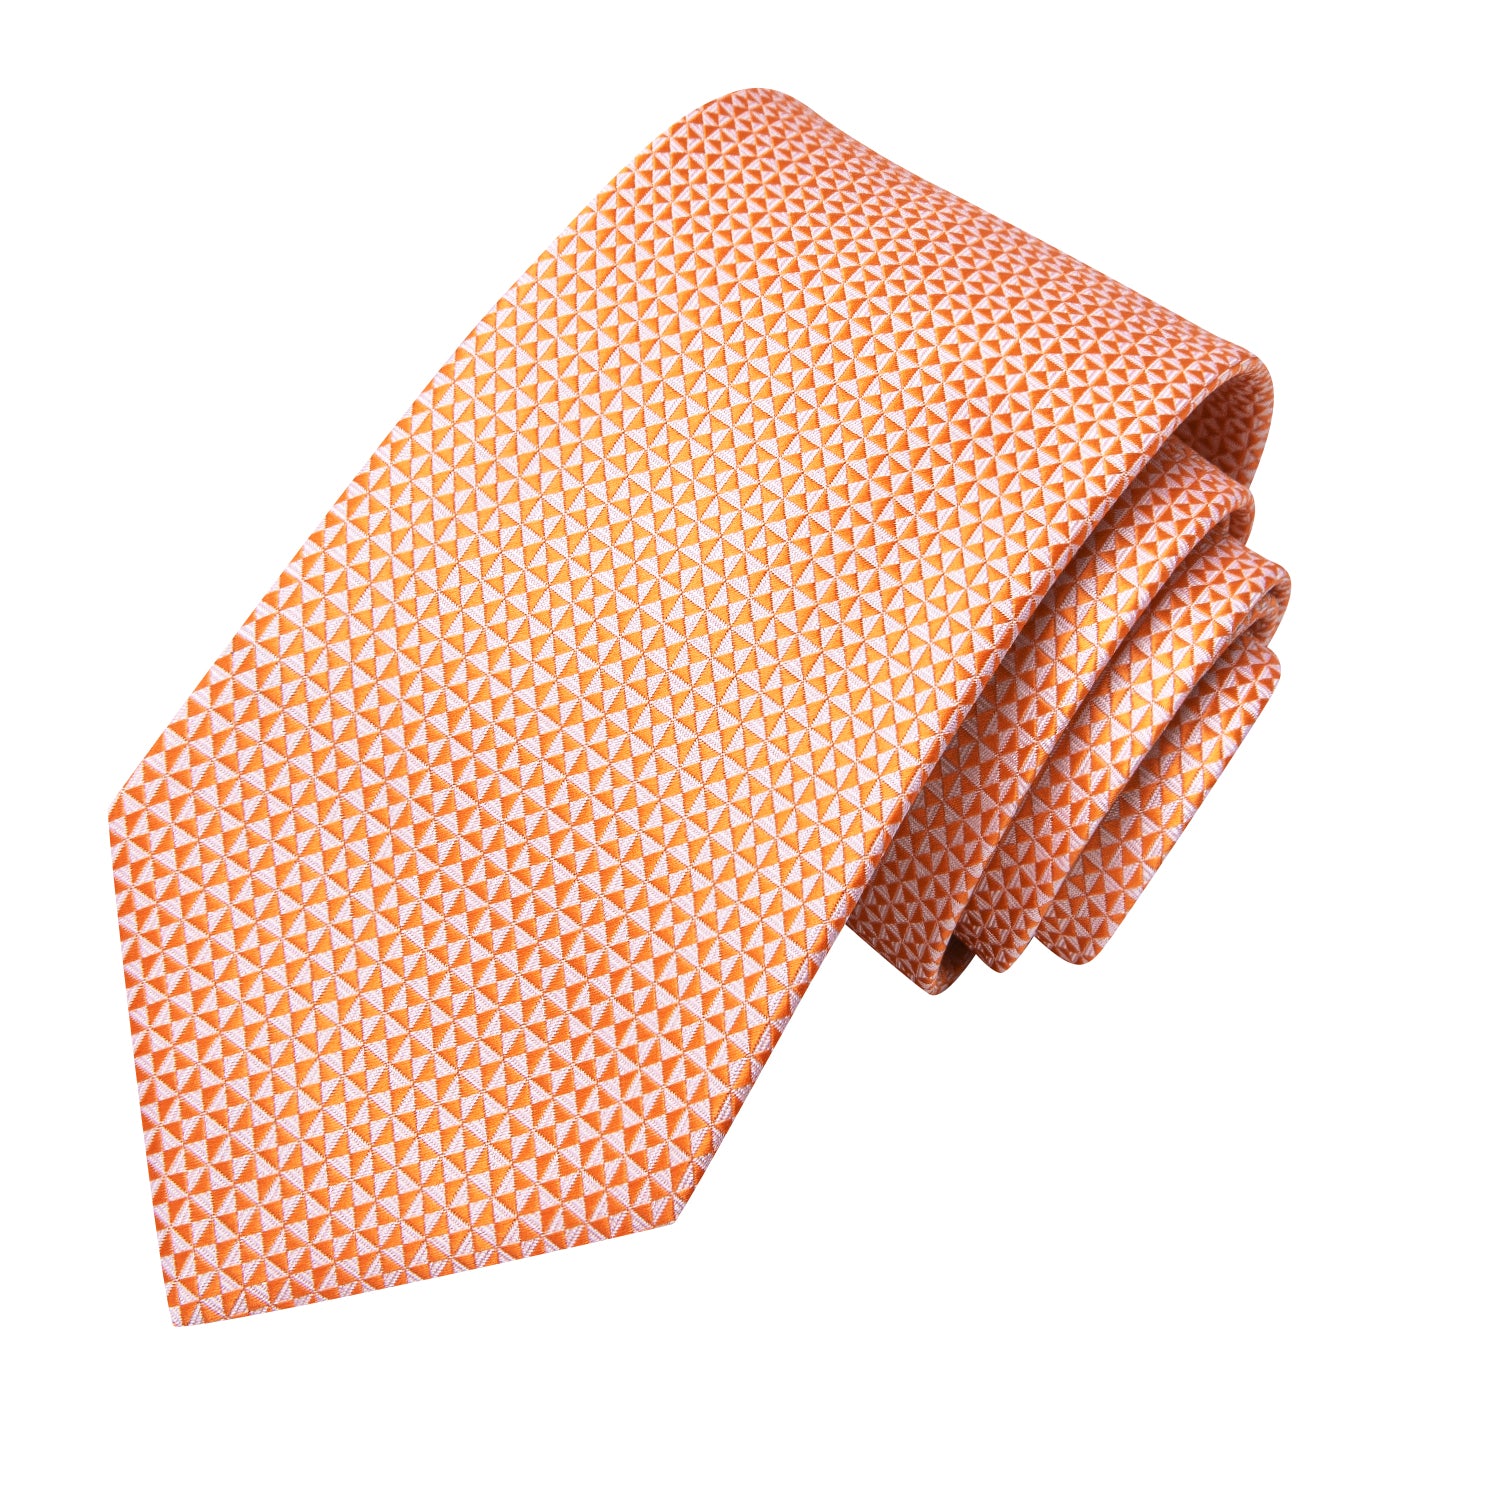 Hi-Tie Orange Novelty Men's Tie Pocket Square Cufflinks Set